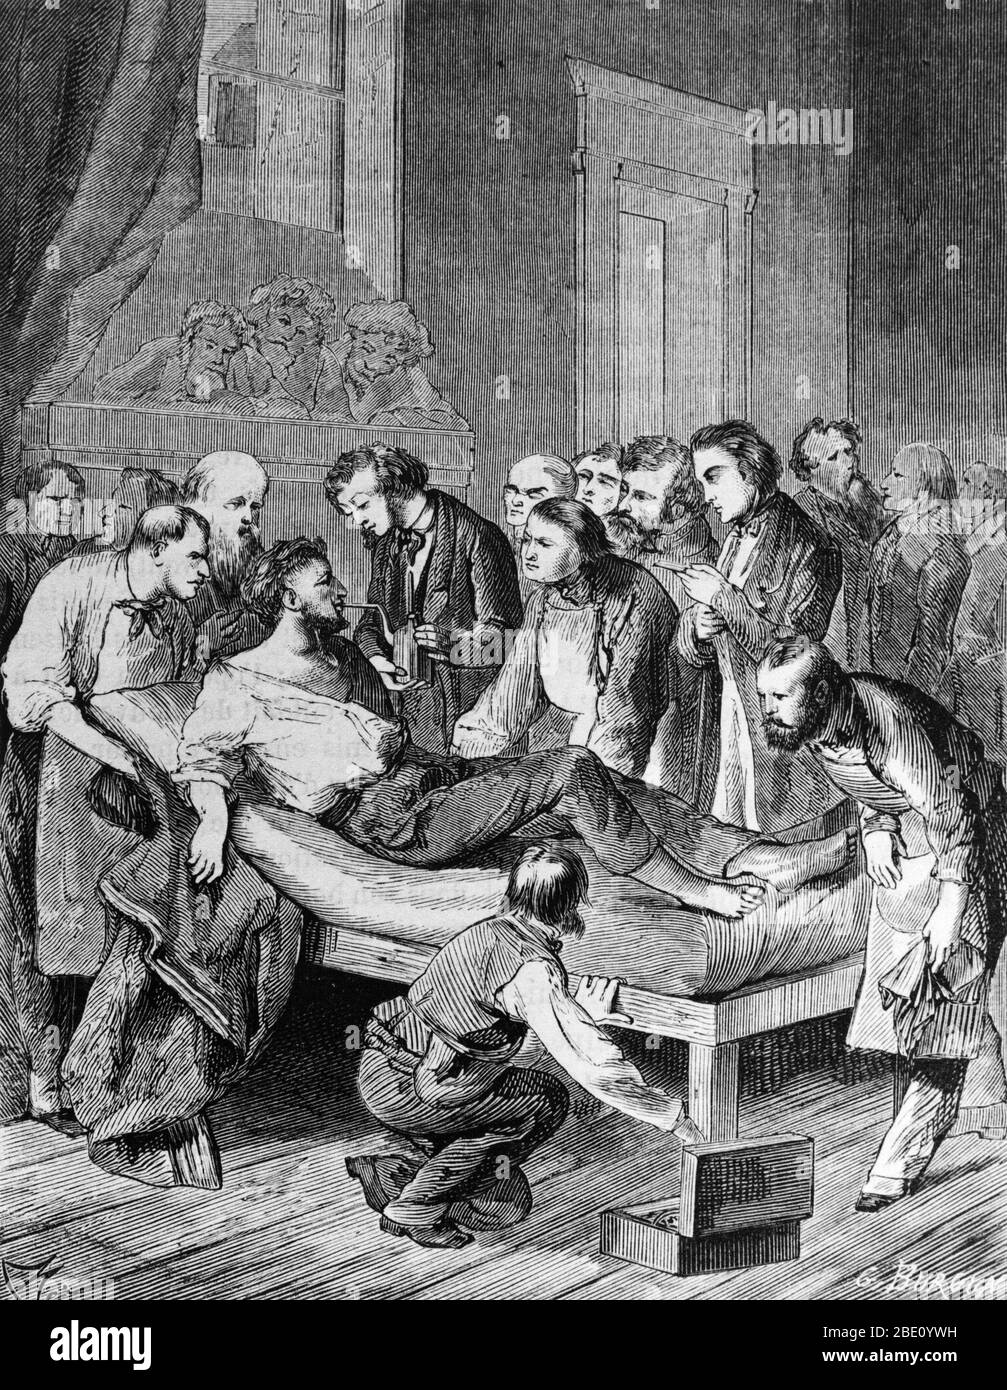 Grabado que muestra a los médicos que administran éter sulfúrico a un paciente antes de extirpar un tumor del cuello en 1846, marcando la primera operación realizada bajo anestesia. Foto de stock